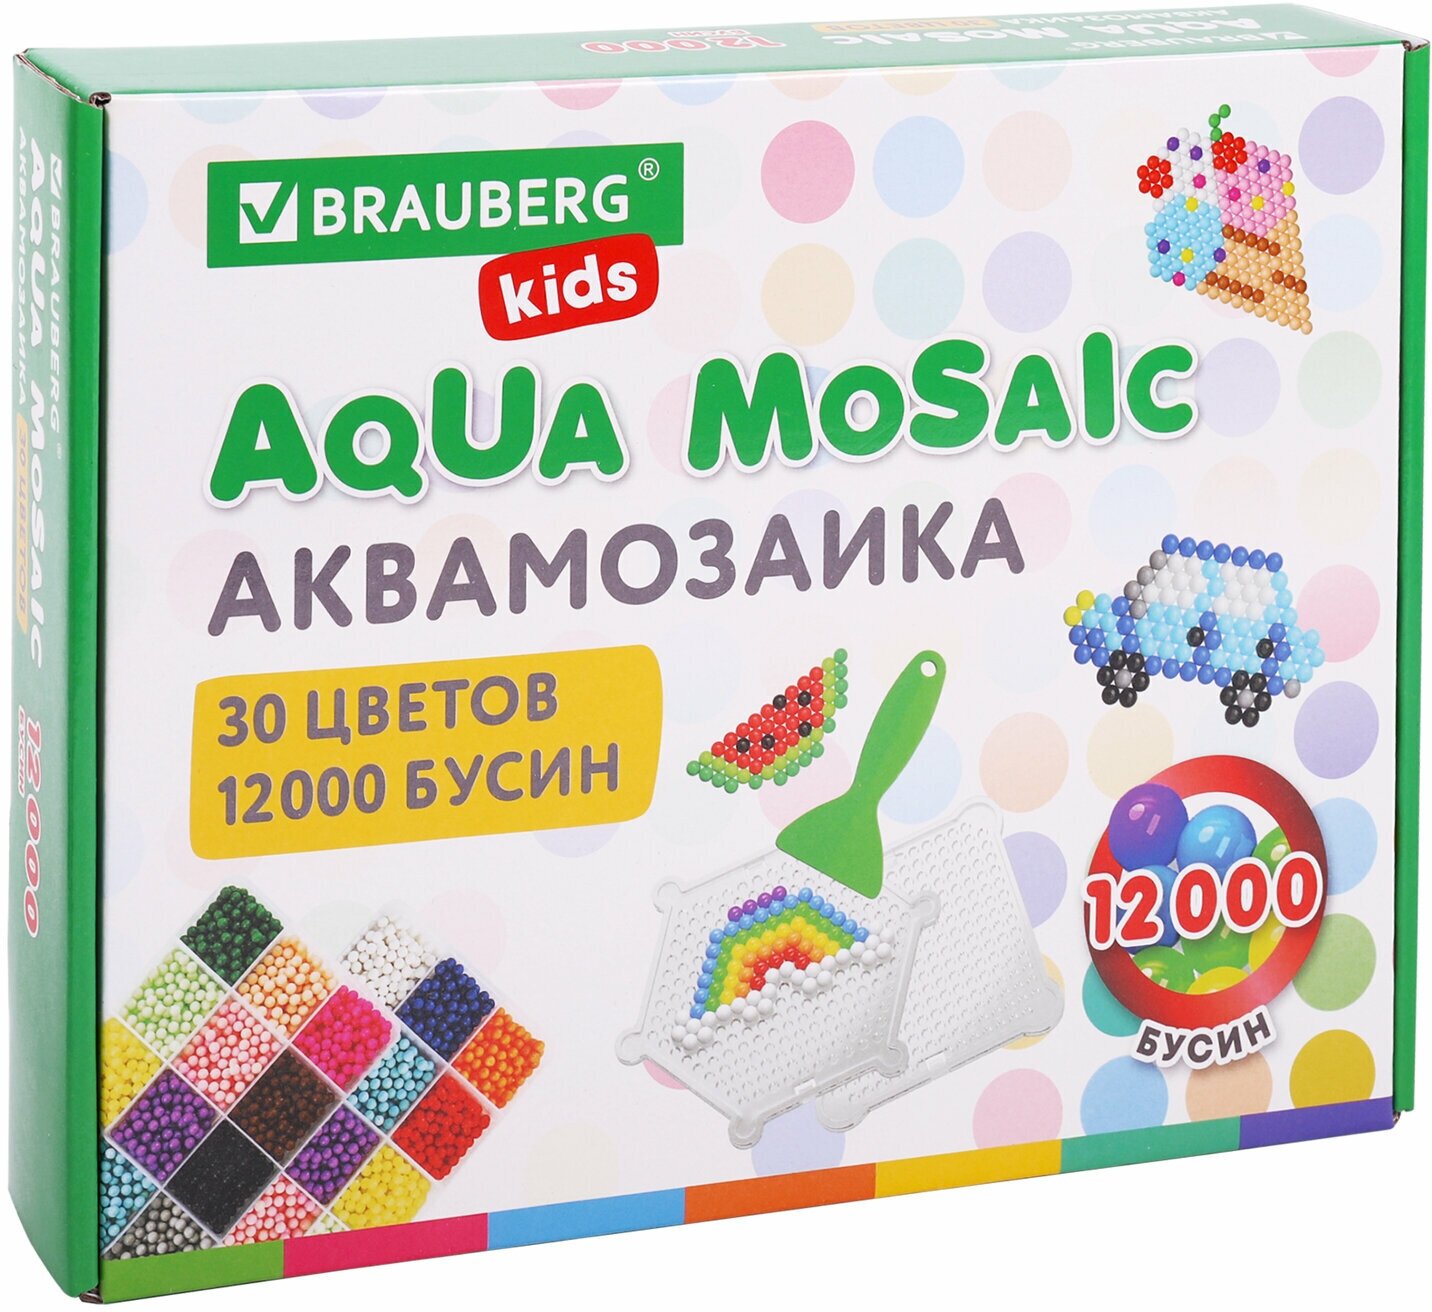 Аквамозаика Aqua Pixels 30 цветов 12000 бусин, с трафаретами, инструментами, аксессуарами, Brauberg, 664917